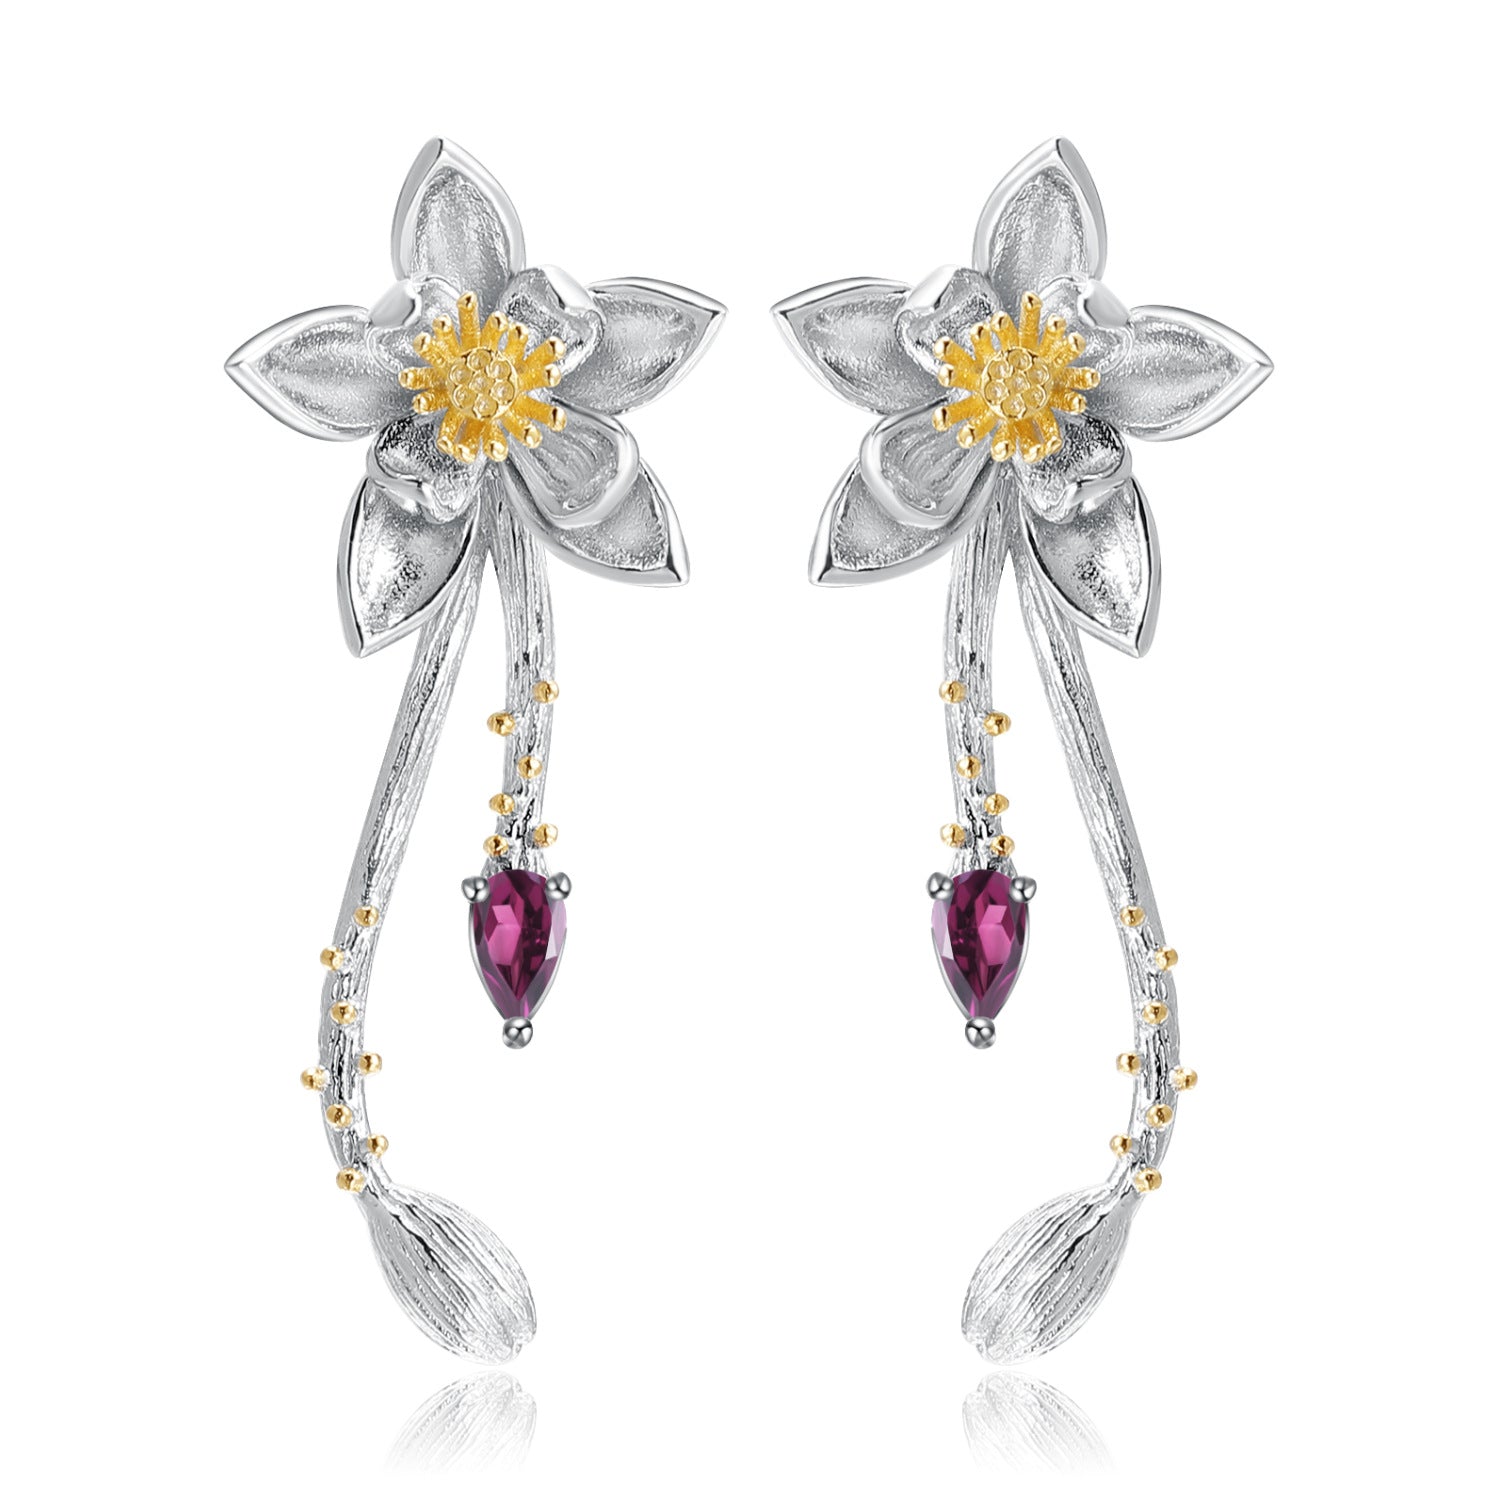 Premium Natural Colourful Gemstone Flower Shape Design Silver Earrings for Women